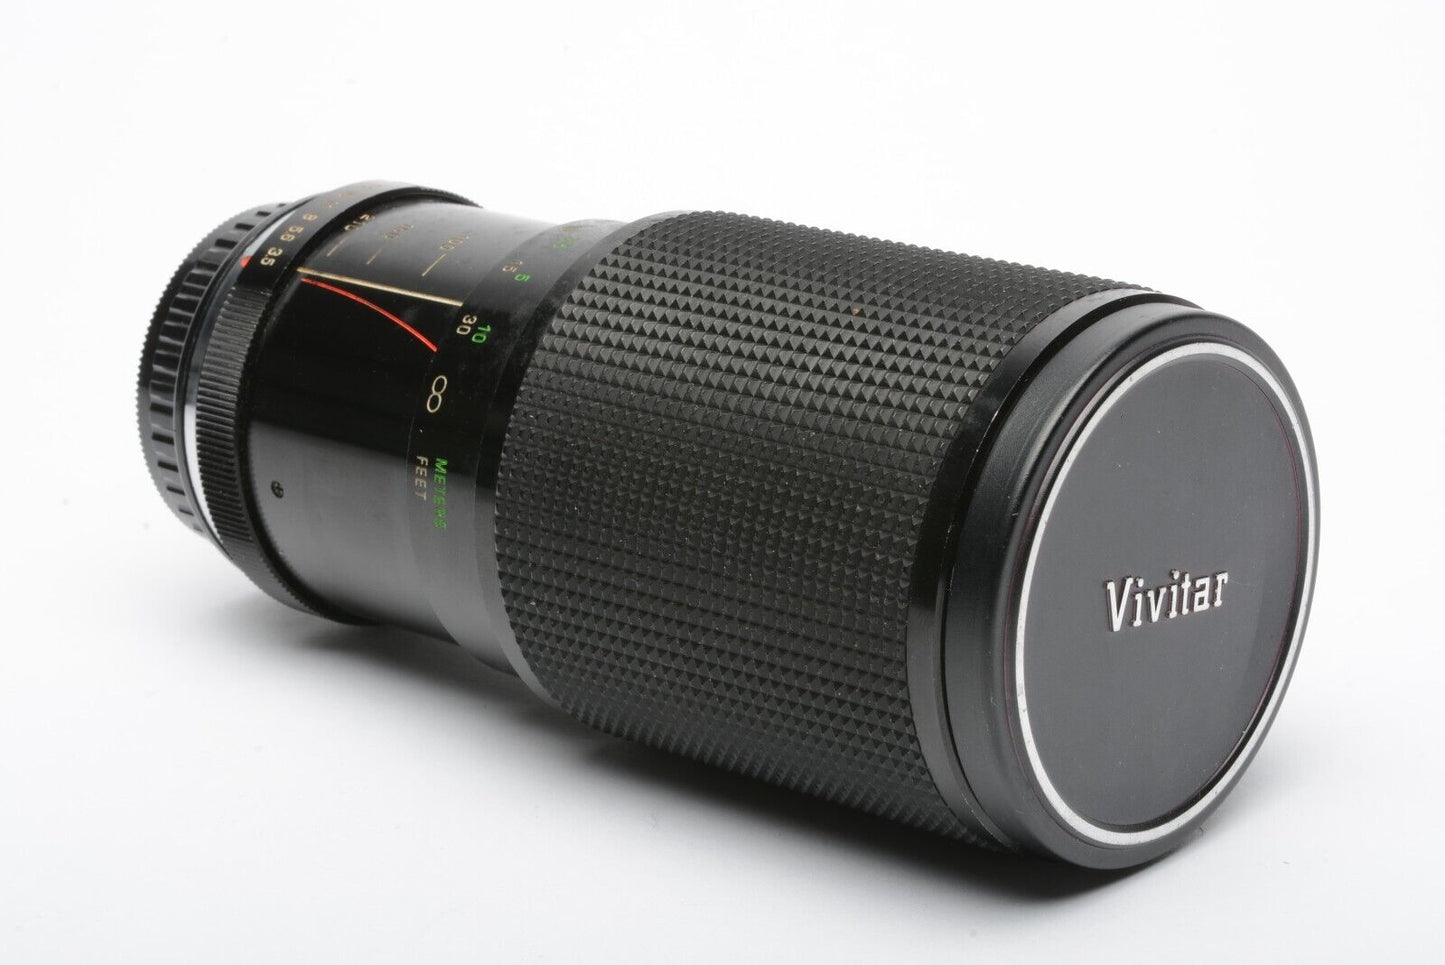 EXC++ VIVITAR 70-210mm f3.5 SERIES 1 VMC MACRO LENS PENTAX, CAPS, NICE & CLEAN